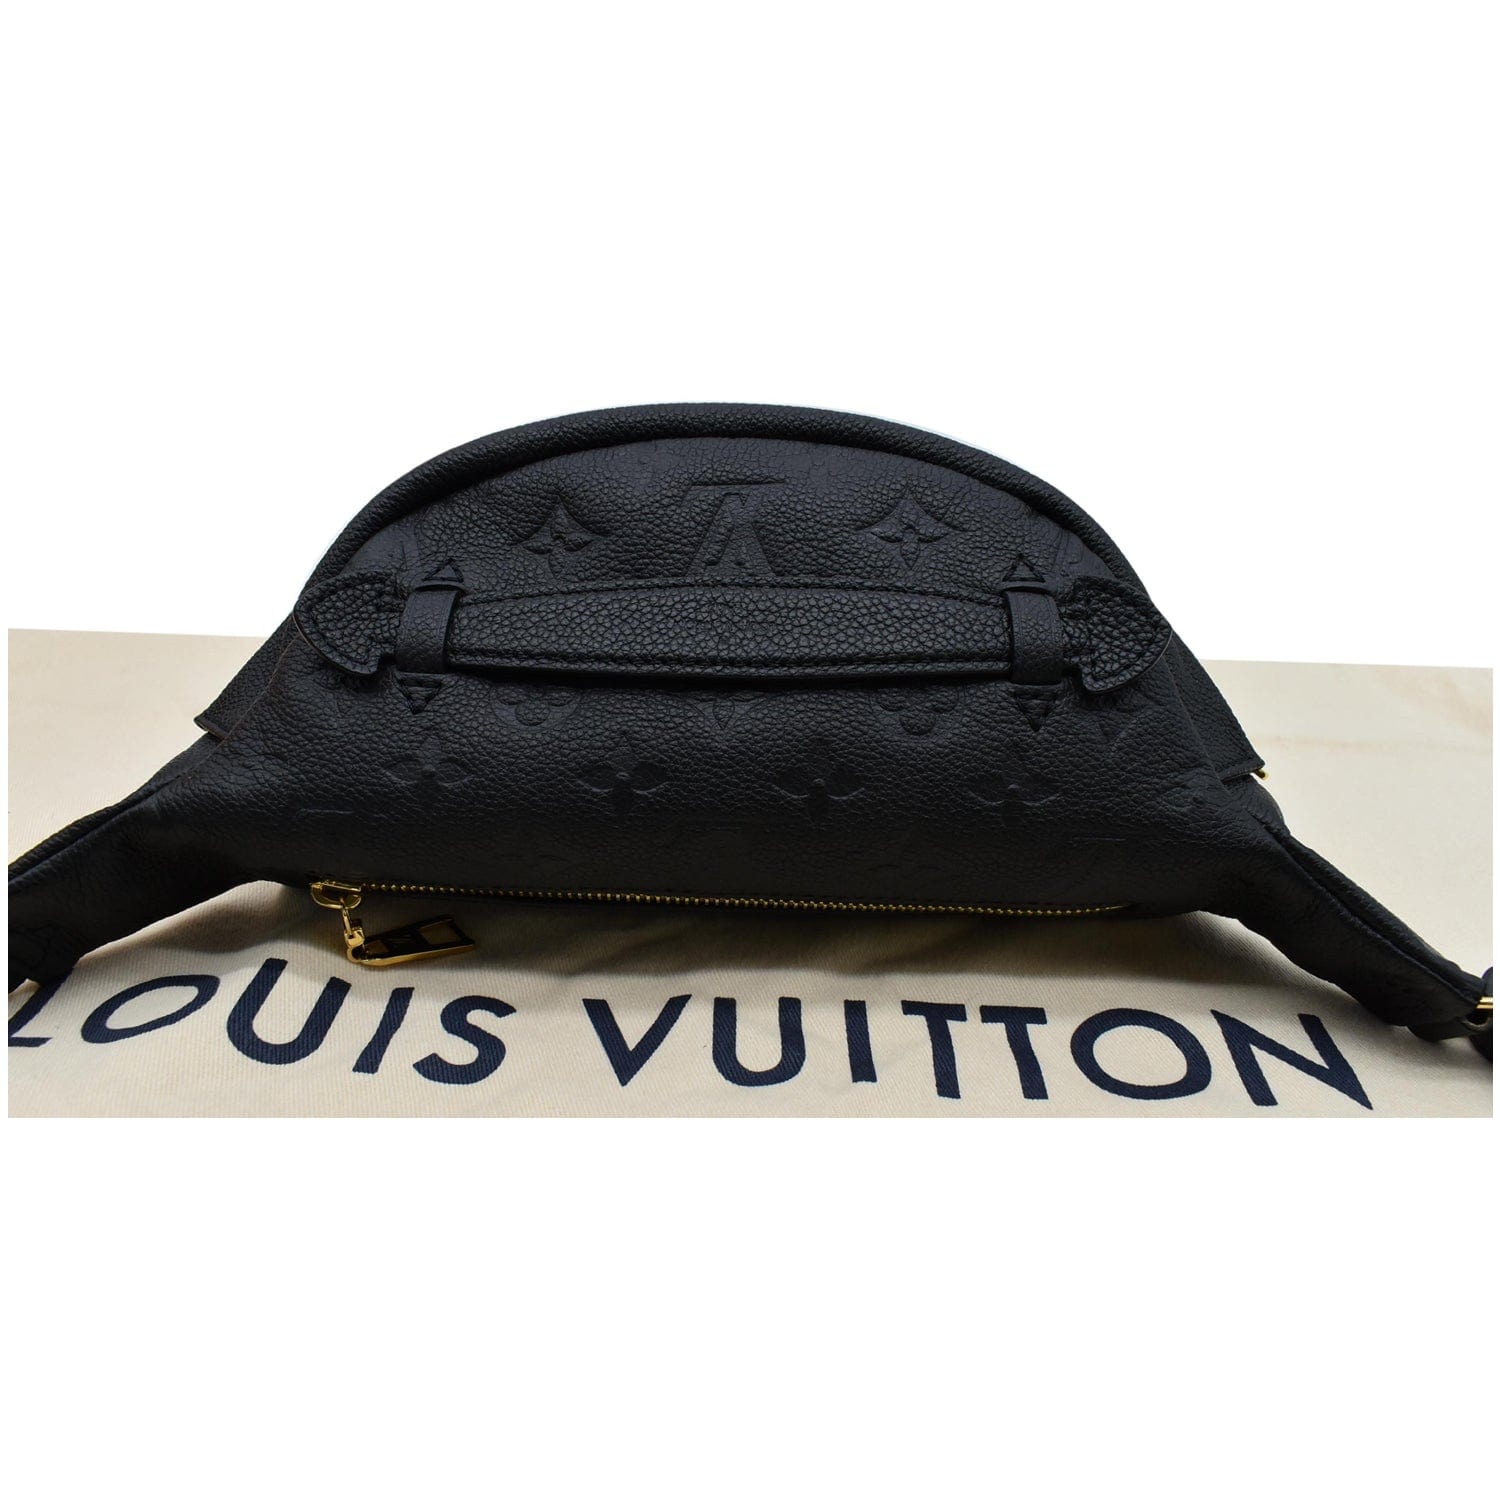 Louis Vuitton Empreinte BumBag Black